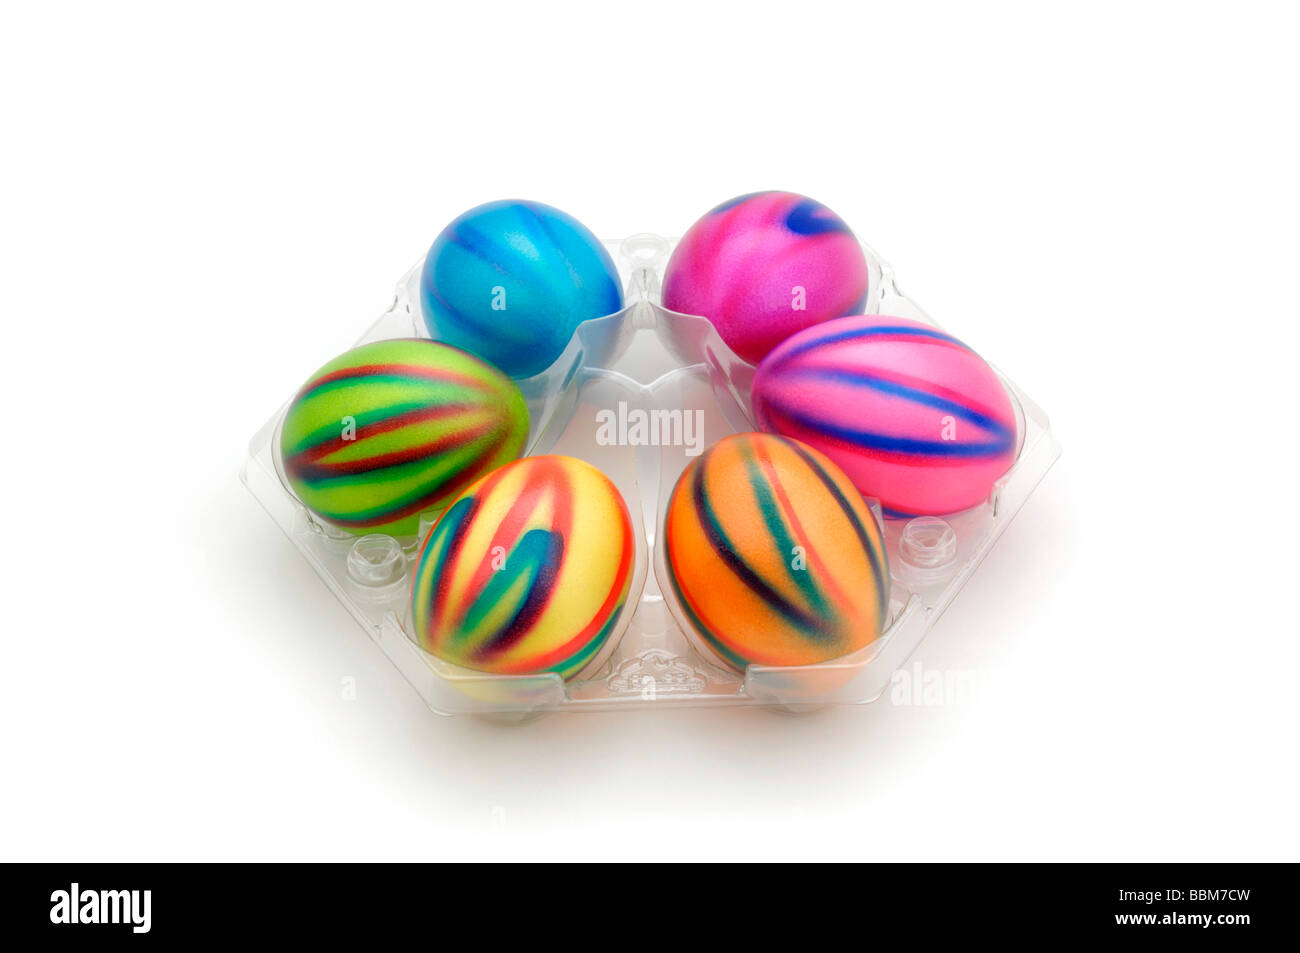 Les oeufs de Pâques colorés dans l'emballage Banque D'Images